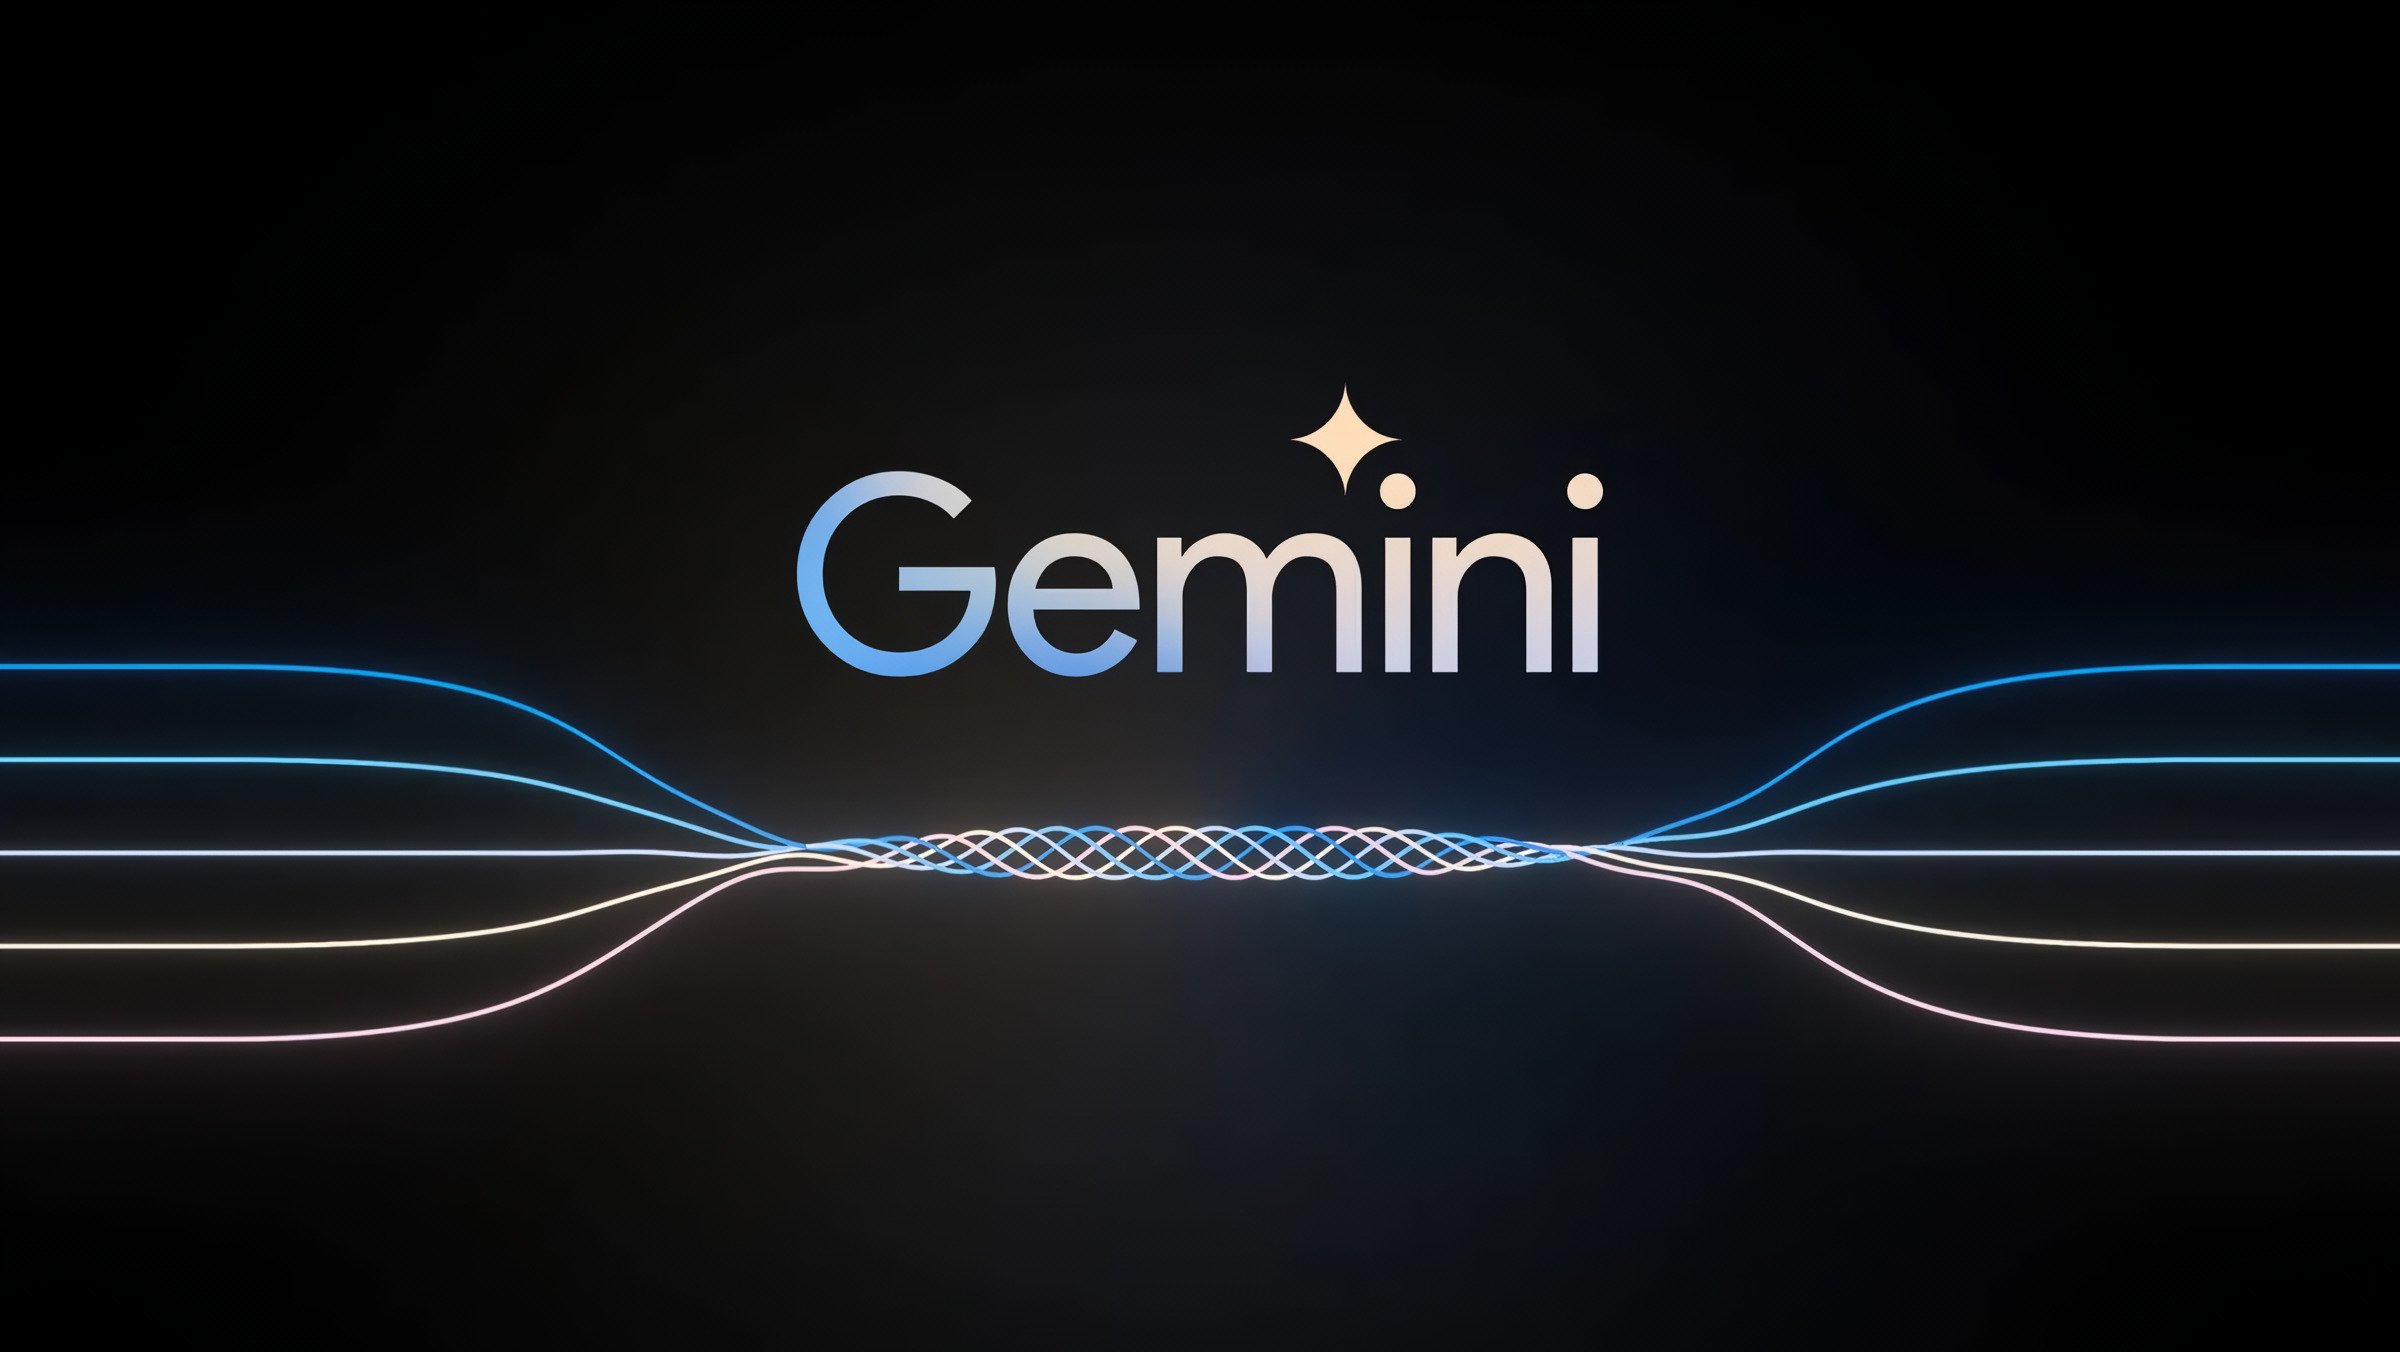 Apple négocie avec Google et OpenAI pour intégrer ChatGPT ou Gemini dans iOS